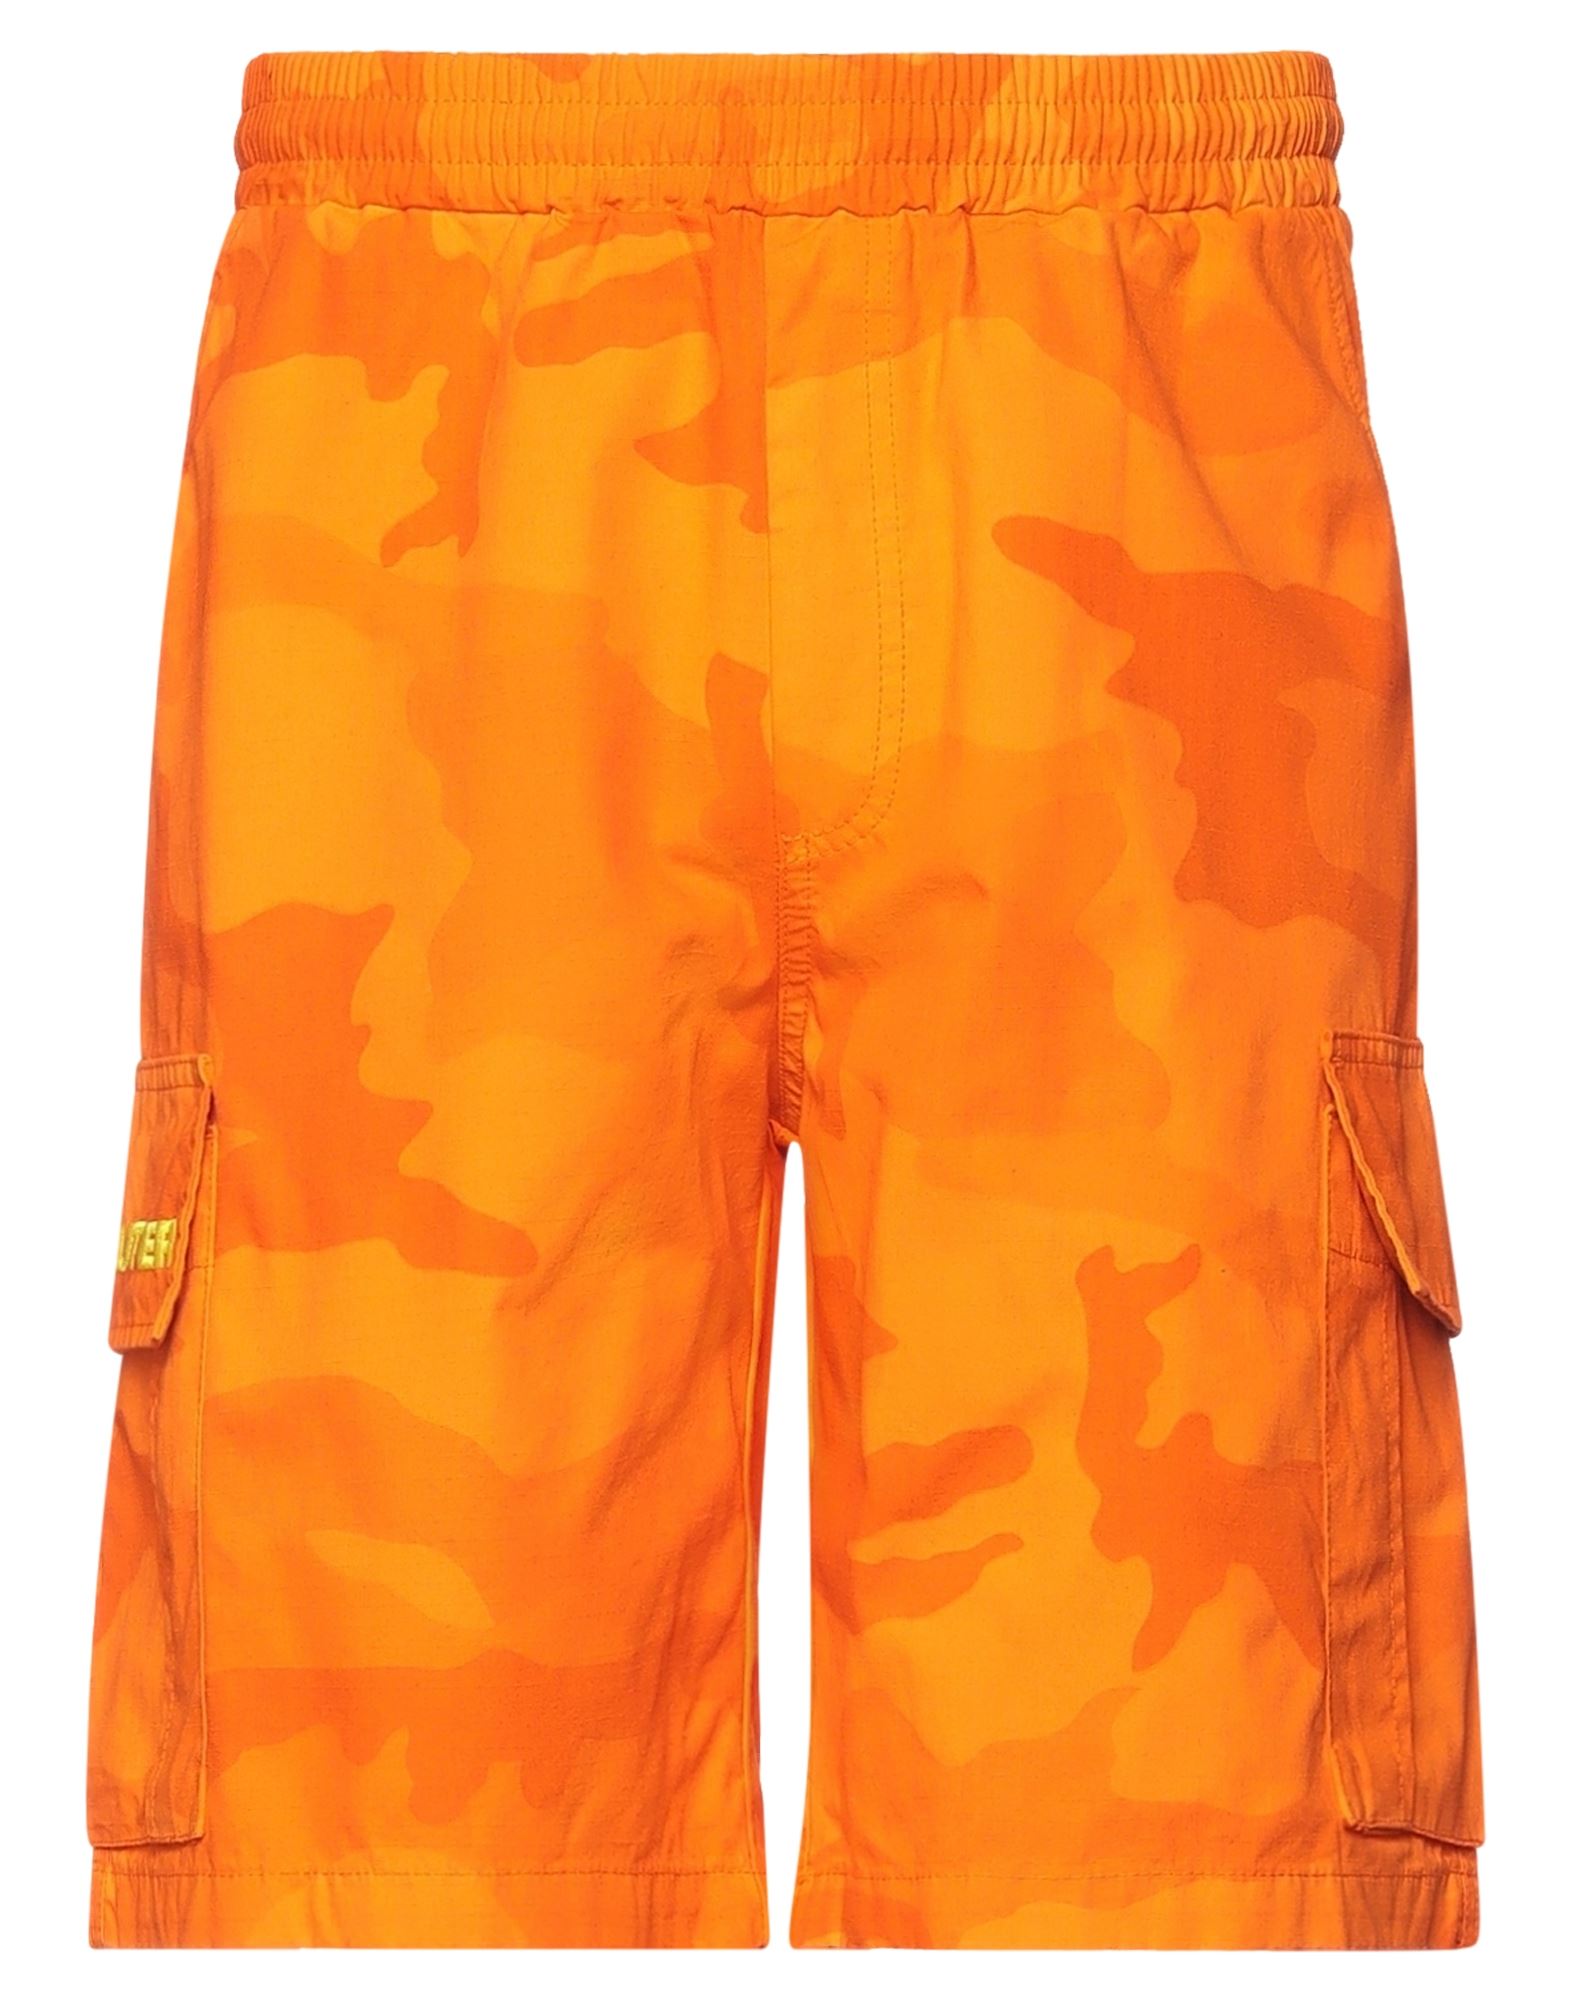 Iuter Man Shorts & Bermuda Shorts Orange Size M Cotton